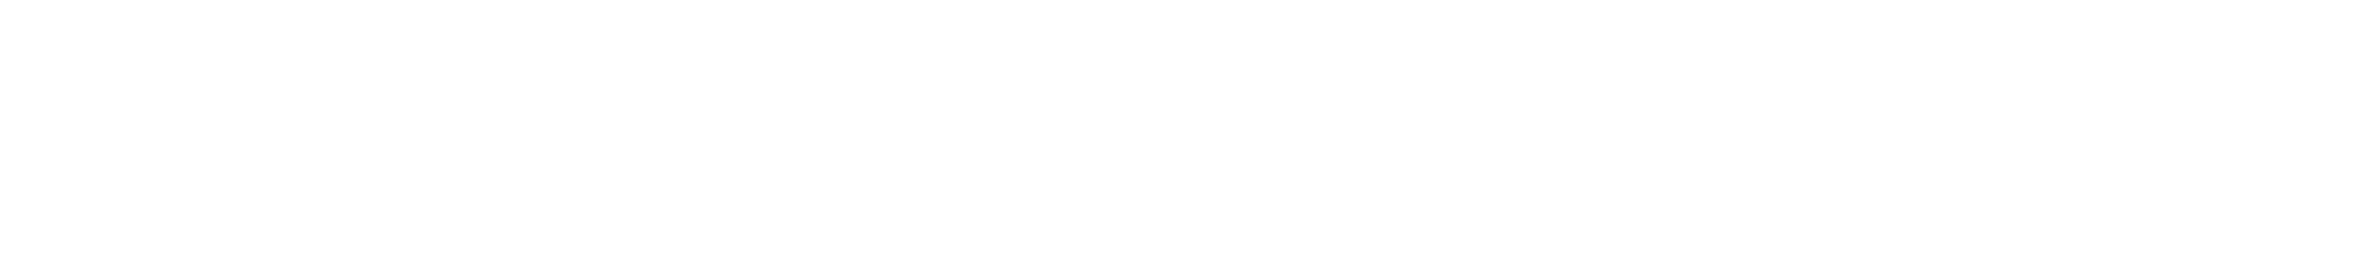 MarshMclennan logo